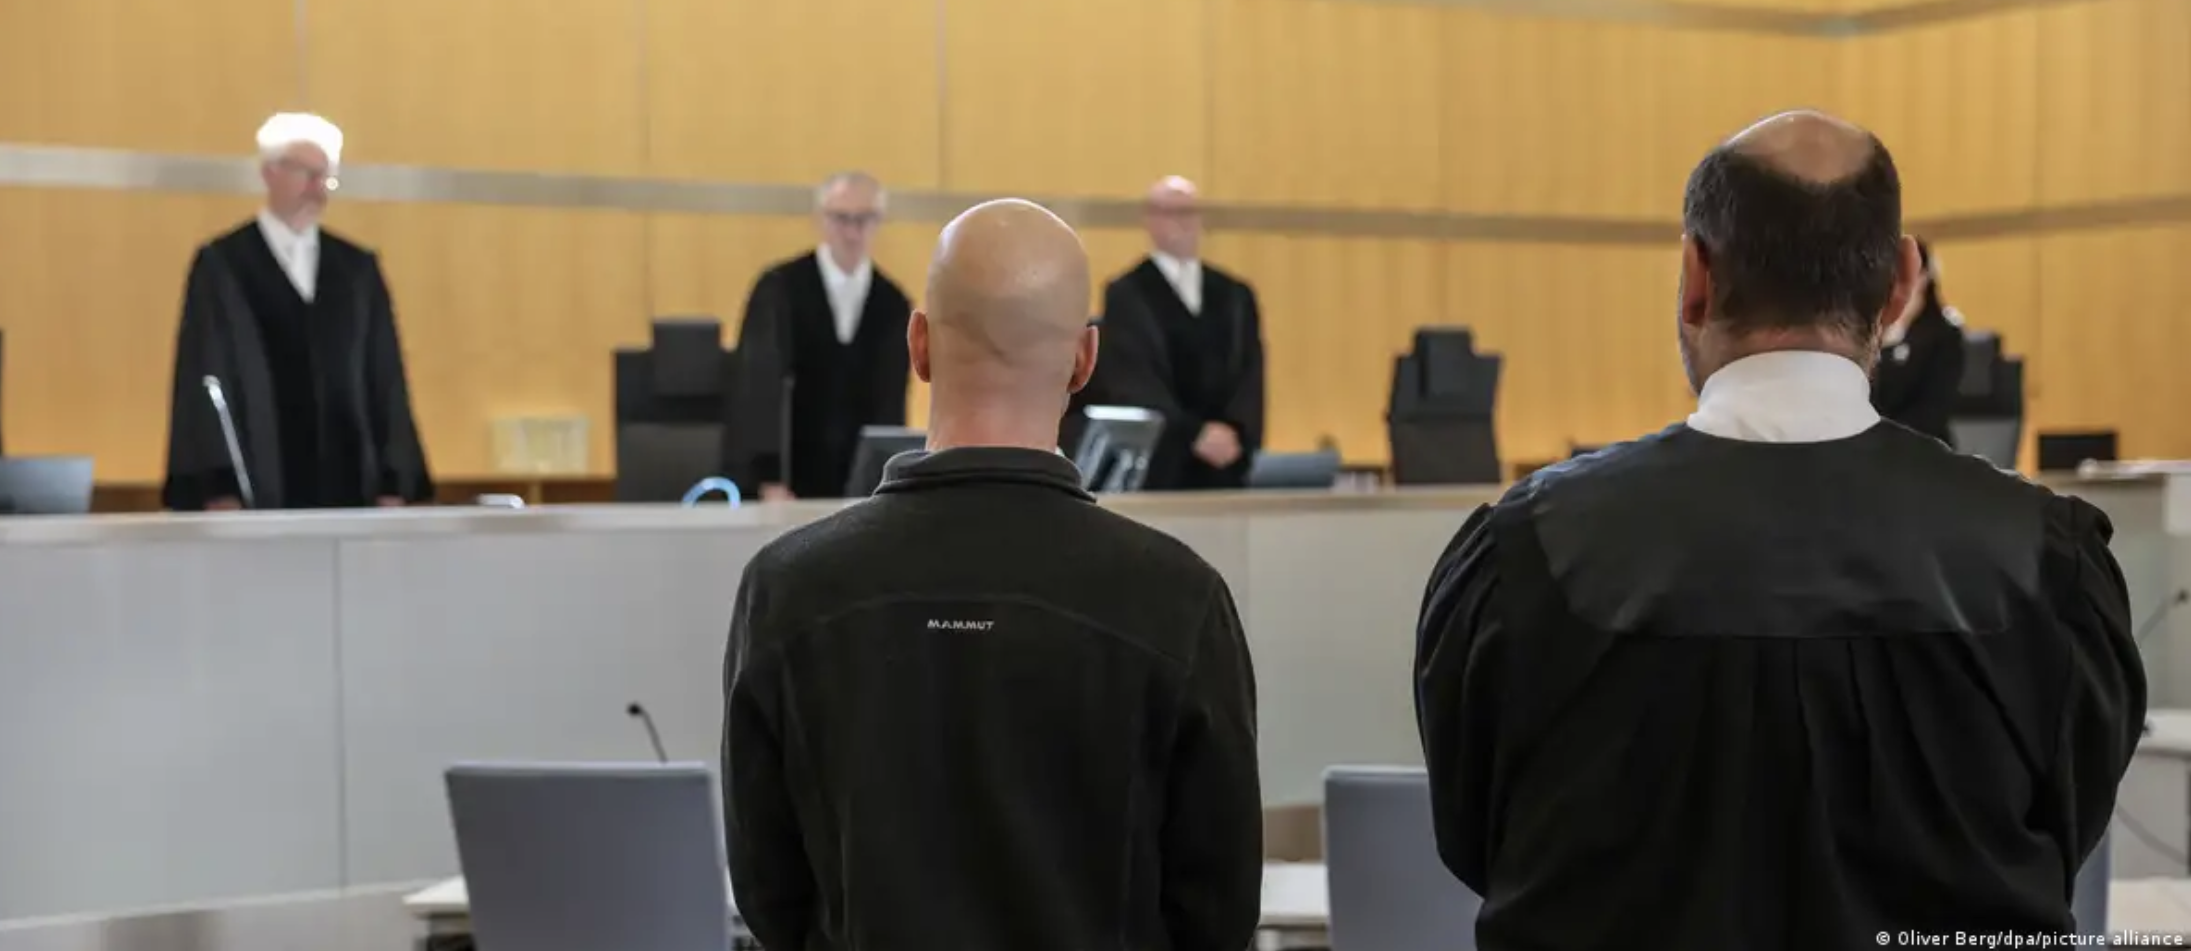 В Германии вынесен приговор по делу о шпионаже